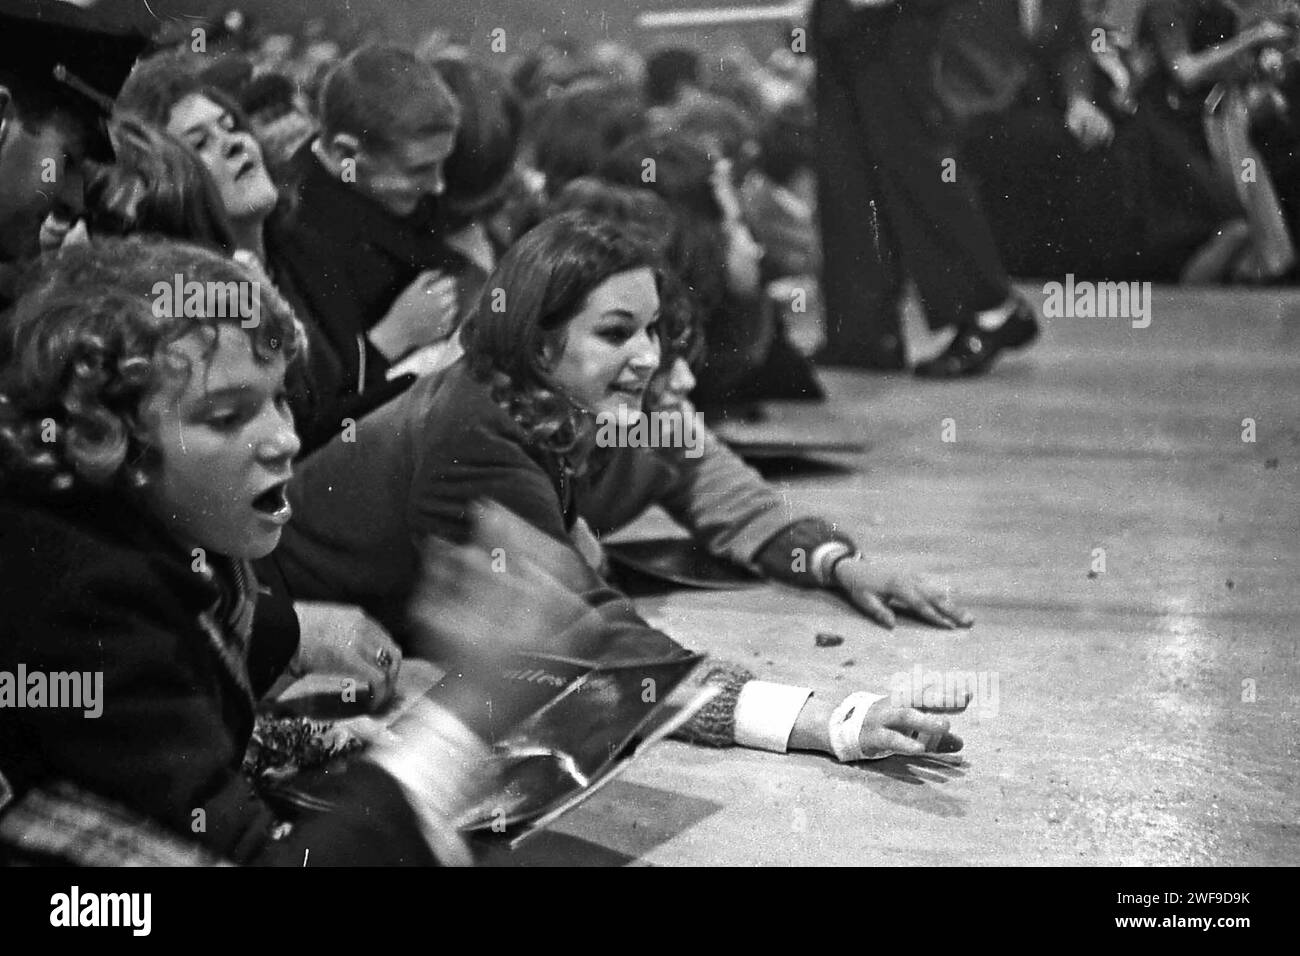 Les fans cherchent des jelly beans après le concert des Beatles à Washington le 11 février 1964 réagissent à la performance des Beatles. Photo de Dennis Brack Banque D'Images